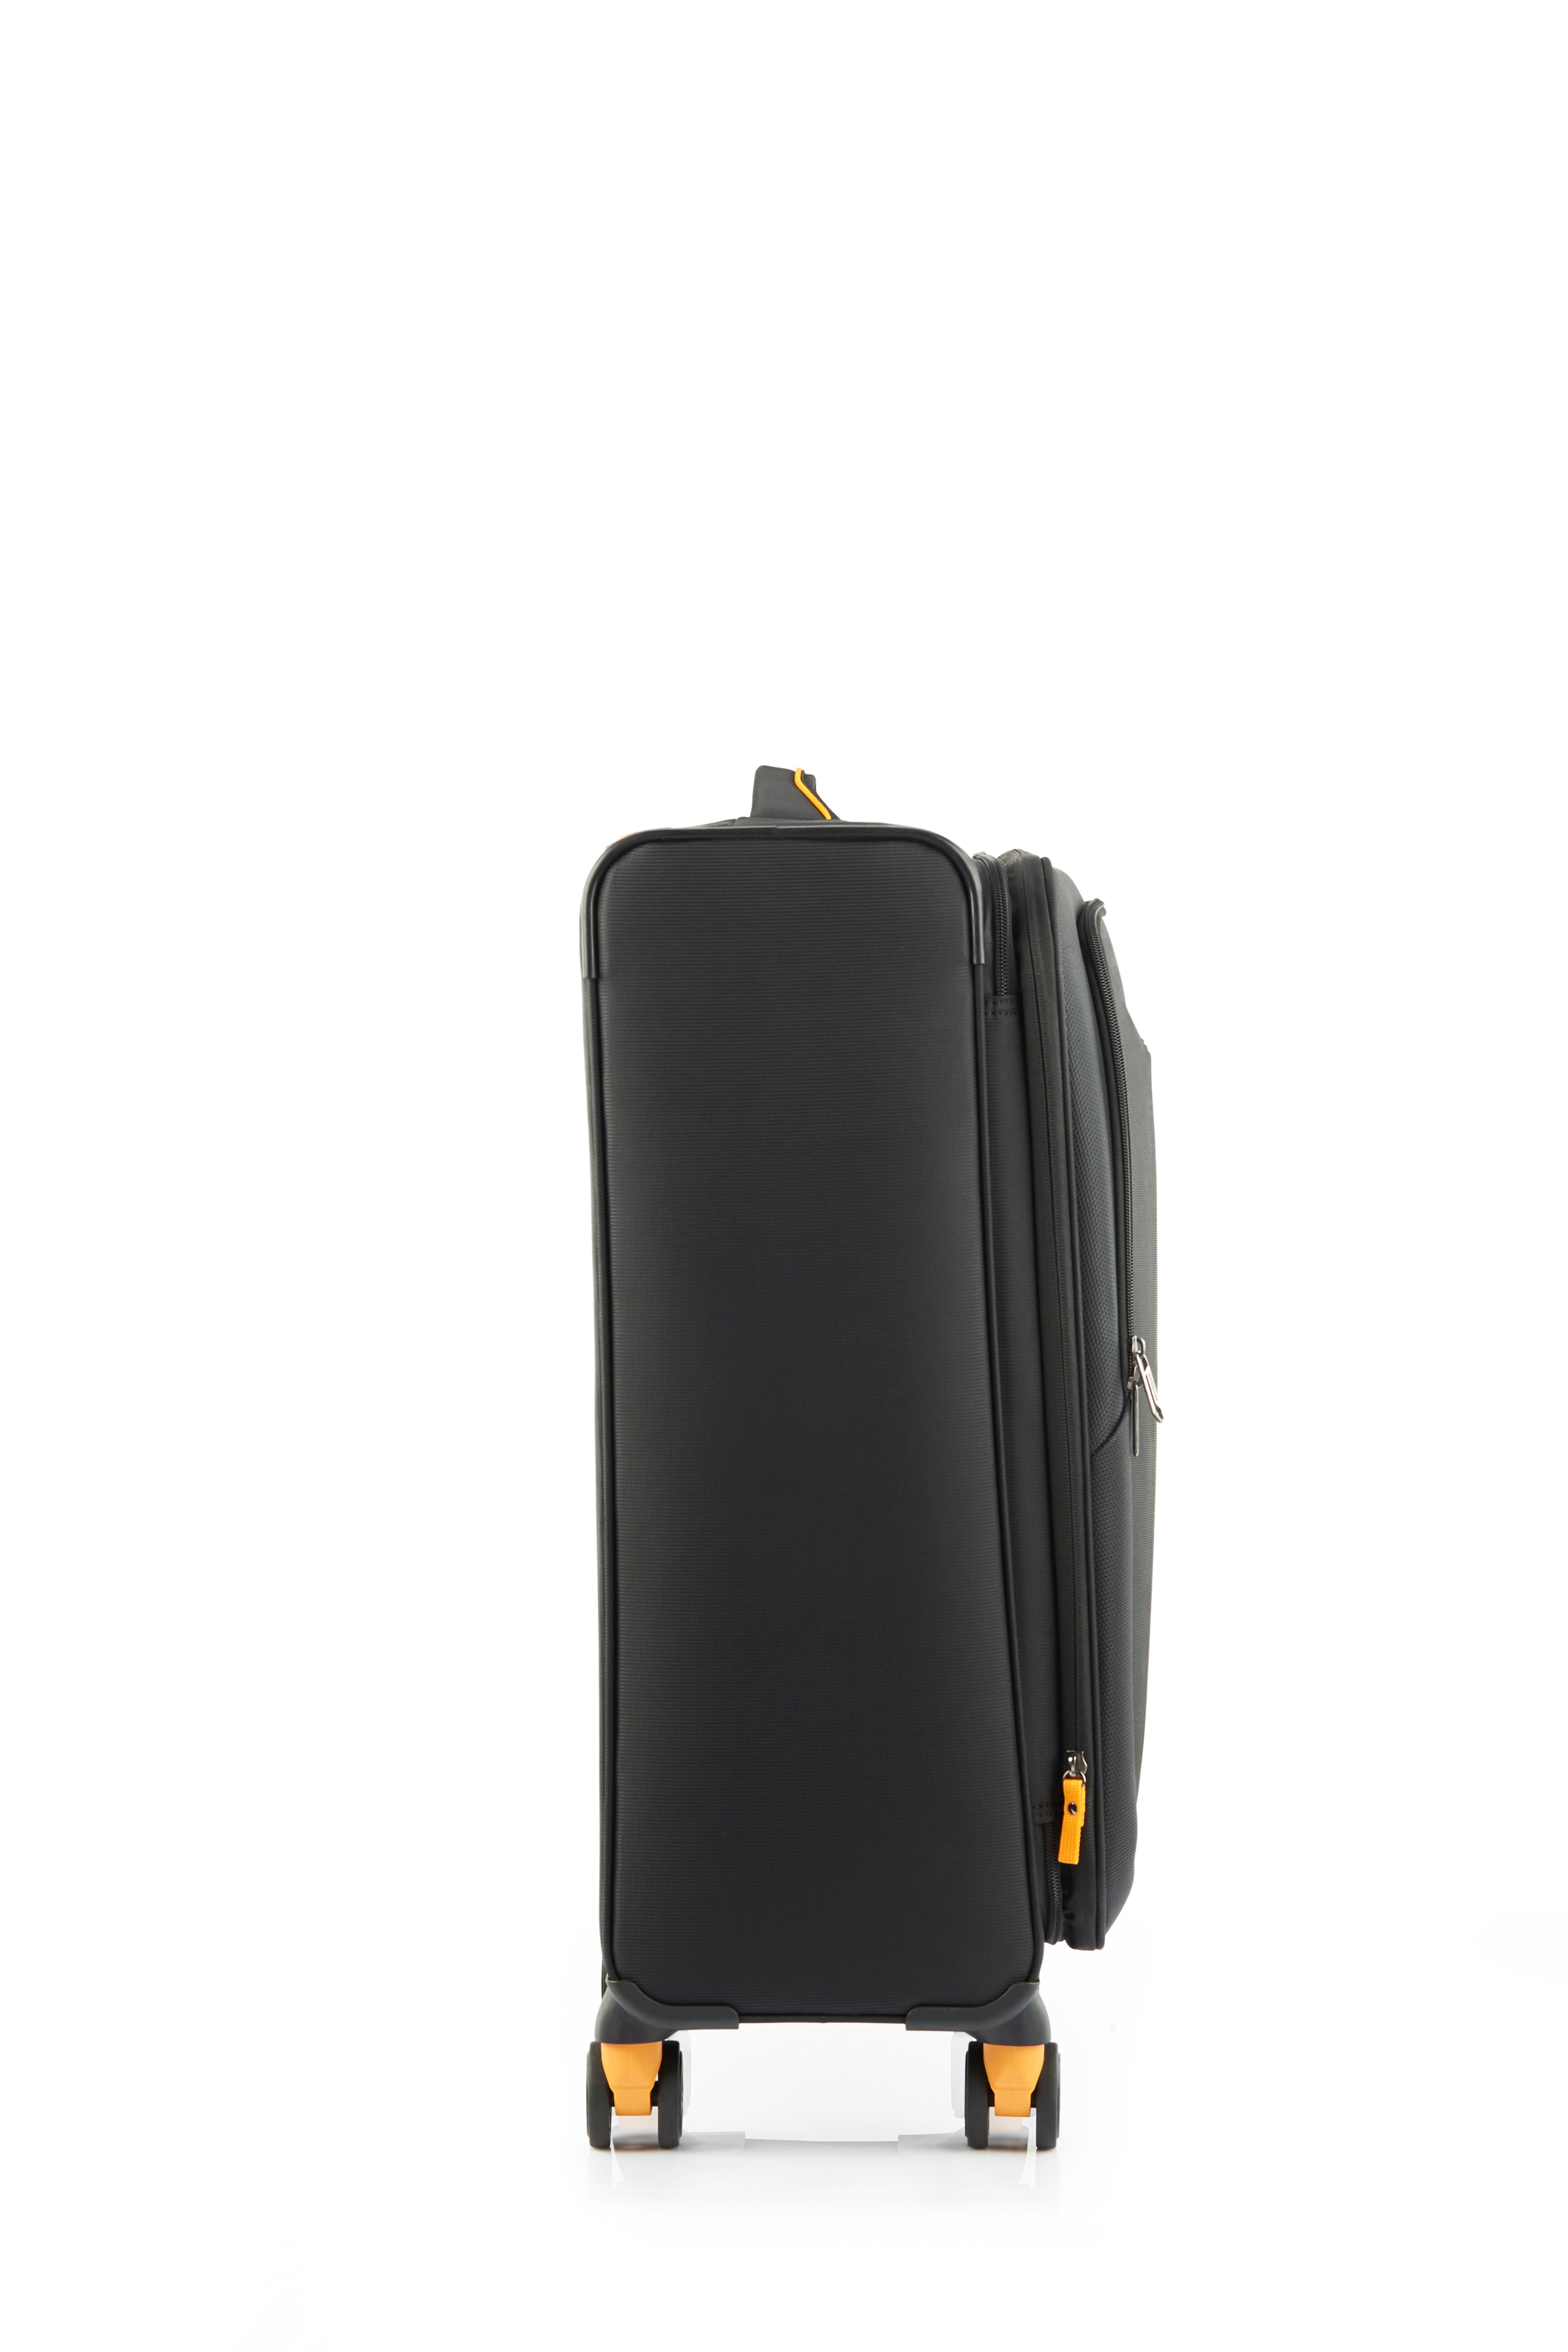 American Tourister - Applite ECO 71cm Medium Suitcase - Black/Must-3